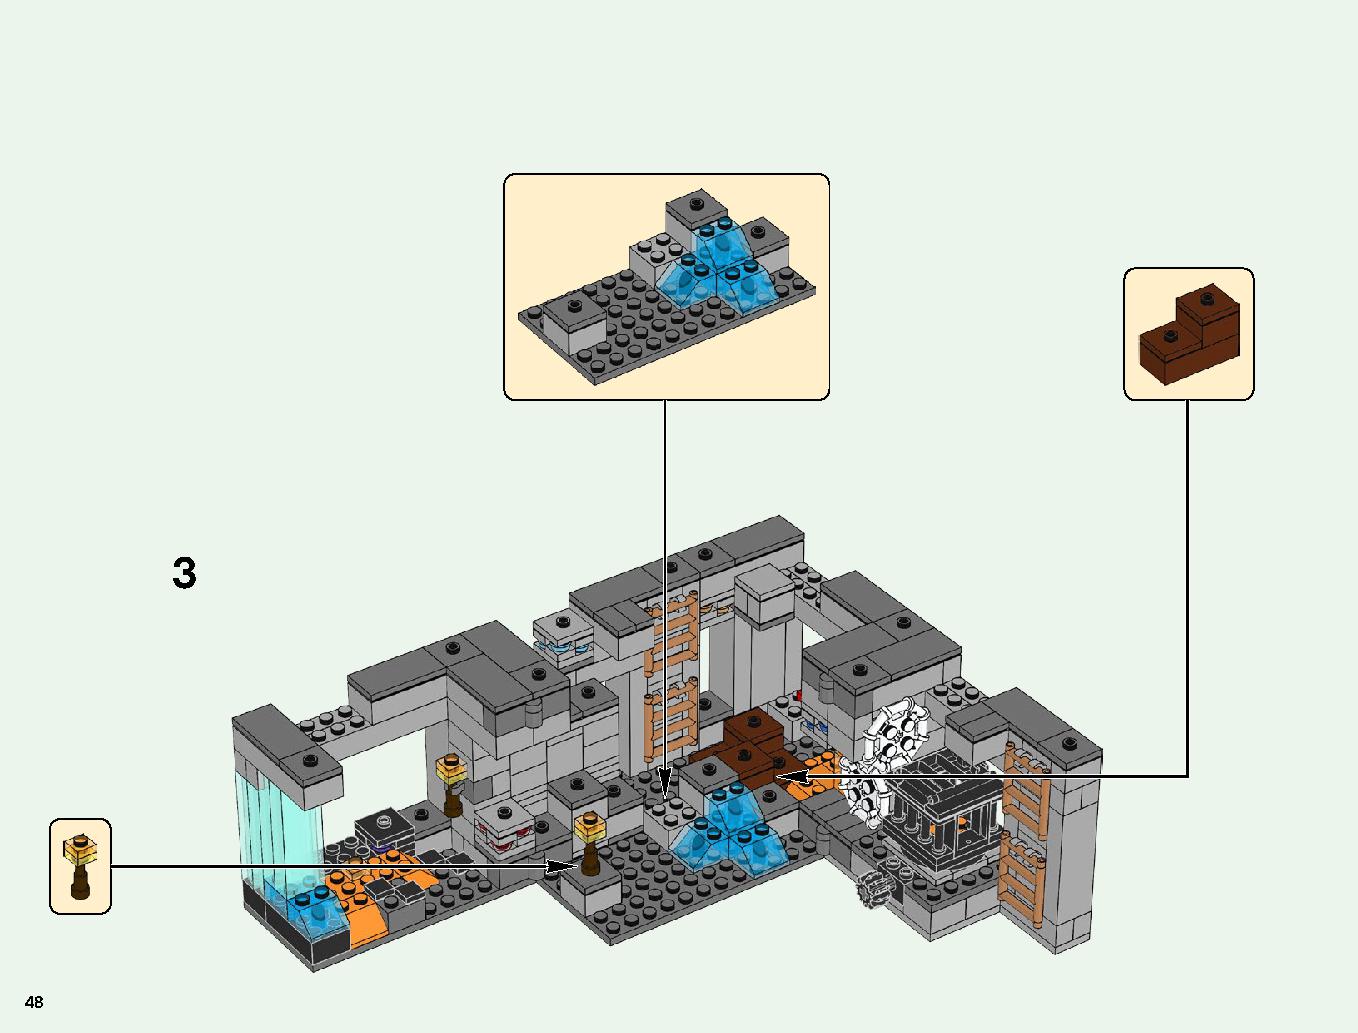 ベッドロックの冒険 21147 レゴの商品情報 レゴの説明書・組立方法 48 page